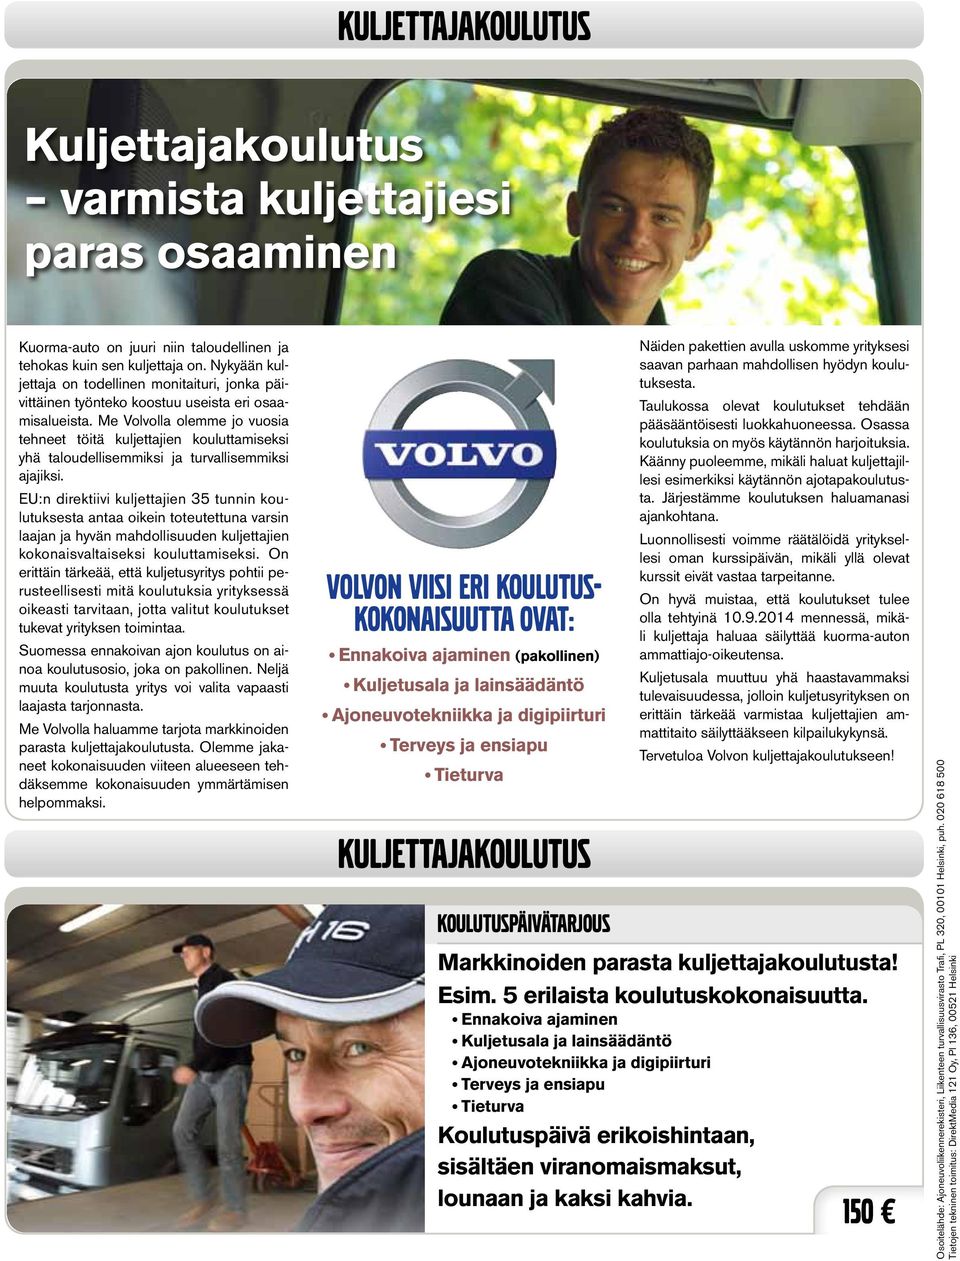 Me Volvolla olemme jo vuosia tehneet töitä kuljettajien kouluttamiseksi yhä taloudellisemmiksi ja turvallisemmiksi ajajiksi.